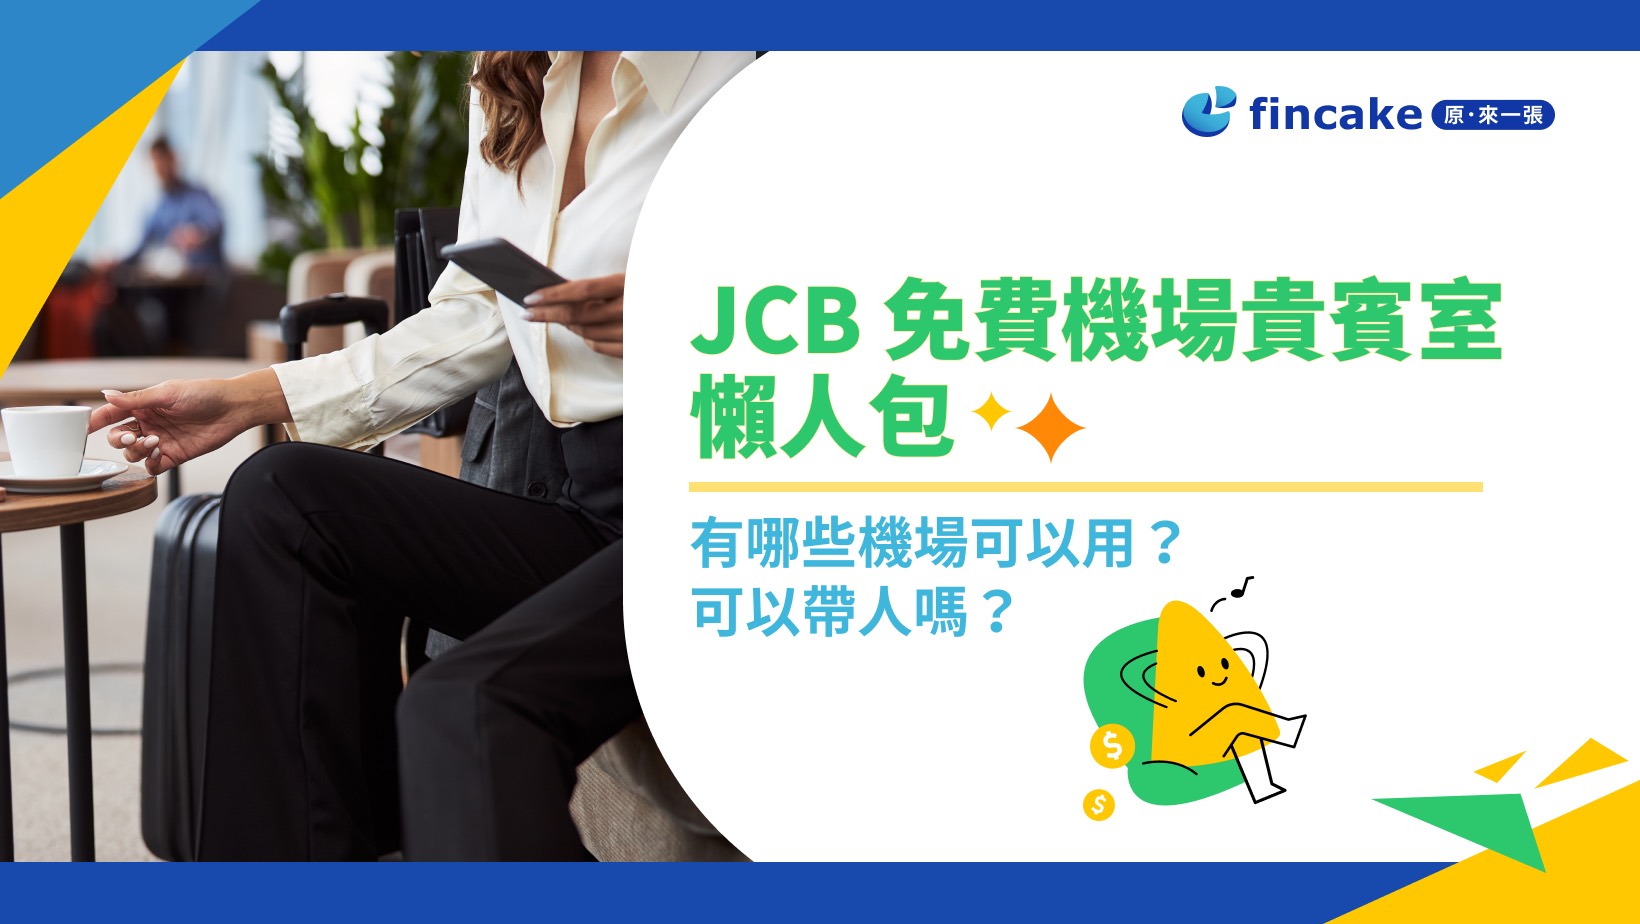 JCB 免費機場貴賓室懶人包：同行者費用、免費使用次數與條件